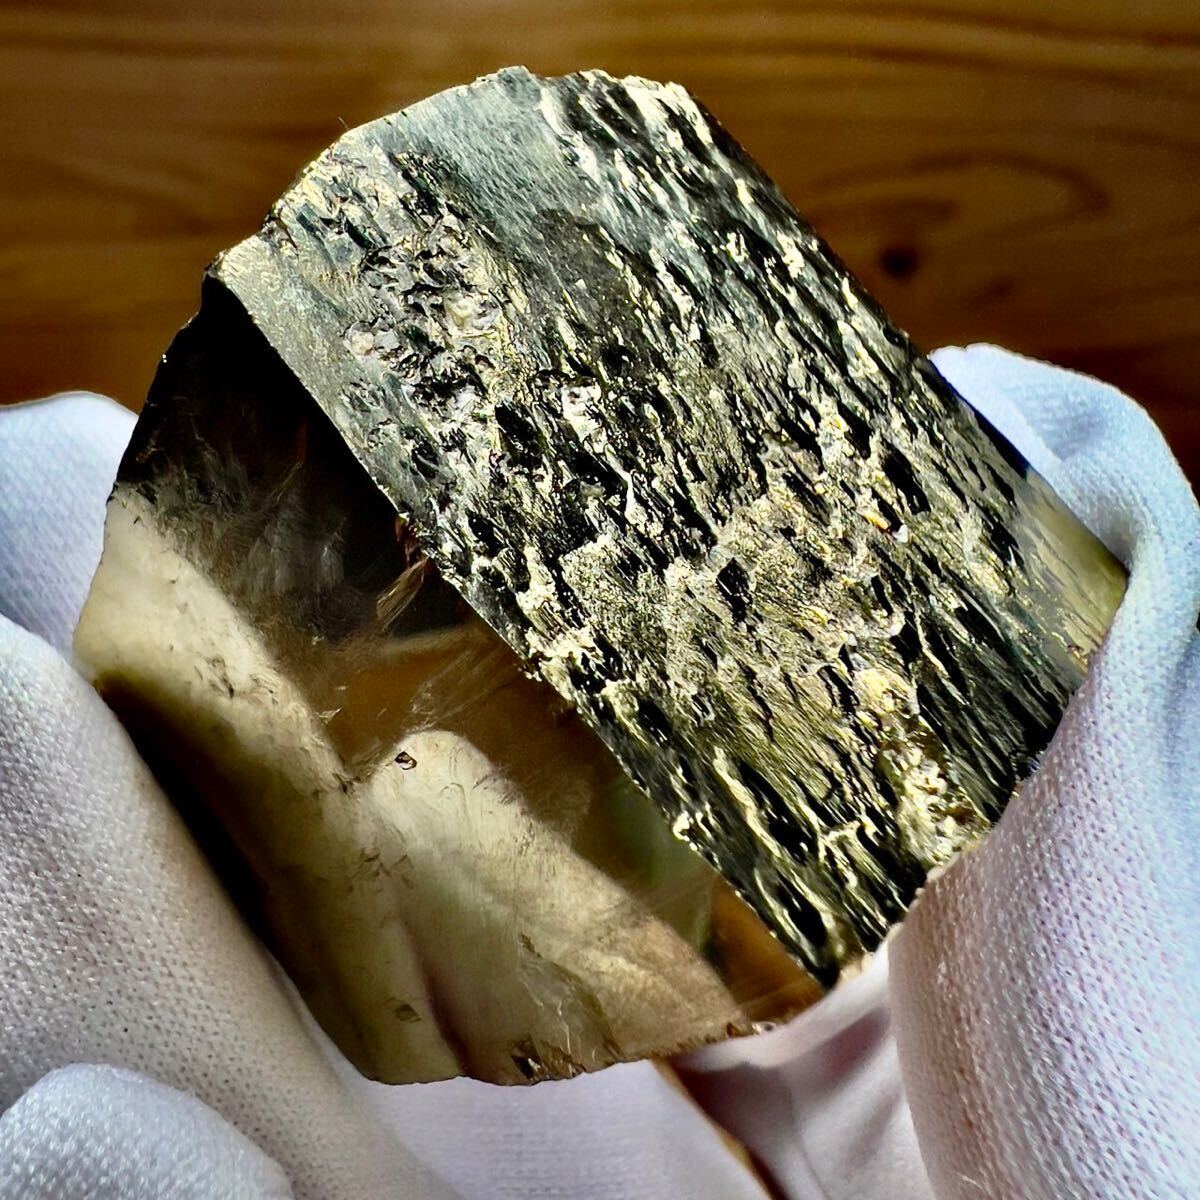  пирог свет желтый металлический . Испания производство Cube кристалл натуральный камень необогащённая руда минерал минерал образец образец . камень камень 